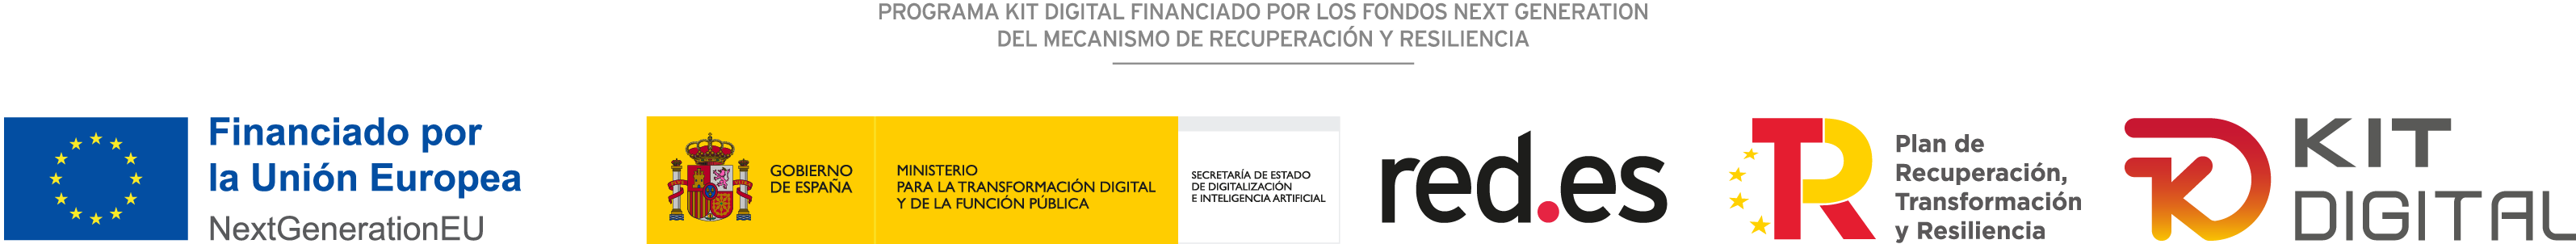 PROGRAMA KIT DIGITAL COFINANCIADO POR LOS FONDOS NEXT GENERATION (EU) DEL MECANISMO DE RECUPERACIÓN Y RESILIENCIA